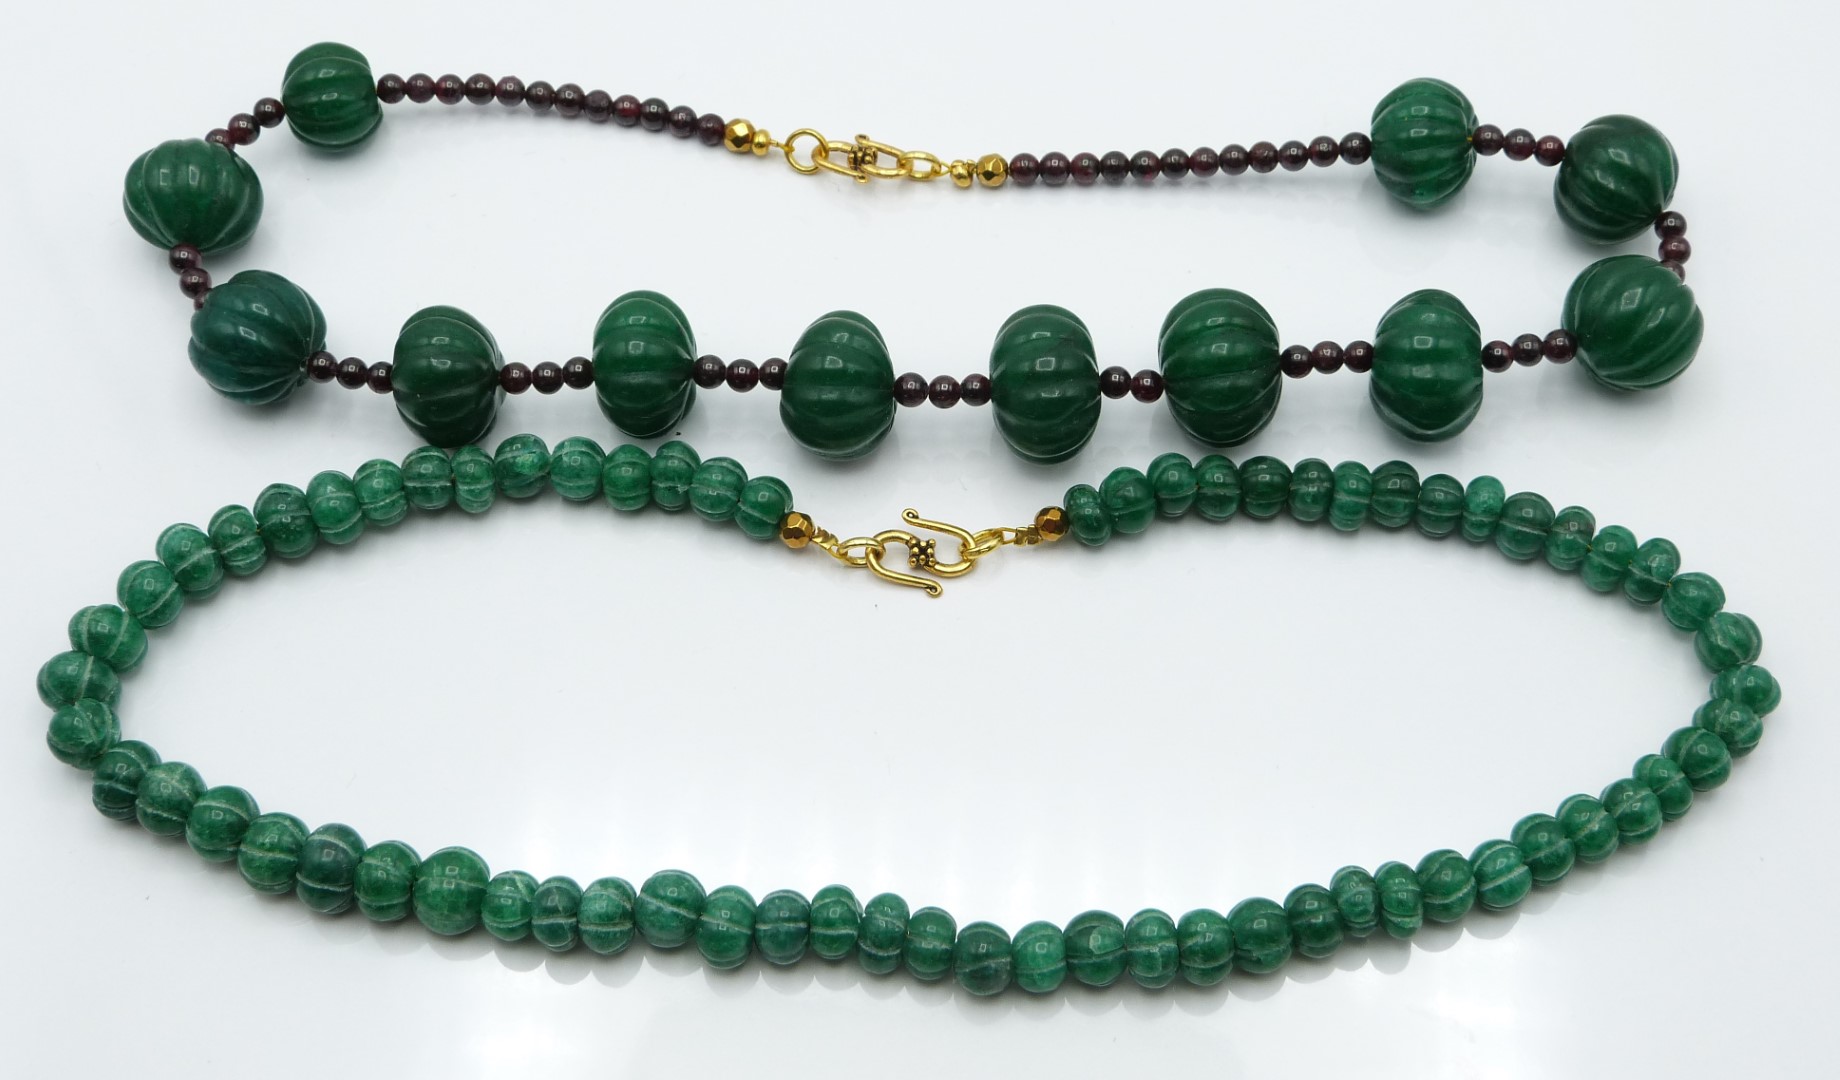 A labradorite necklace, jade and quartz necklace, garnet and quartz and another quartz necklace - Image 2 of 3